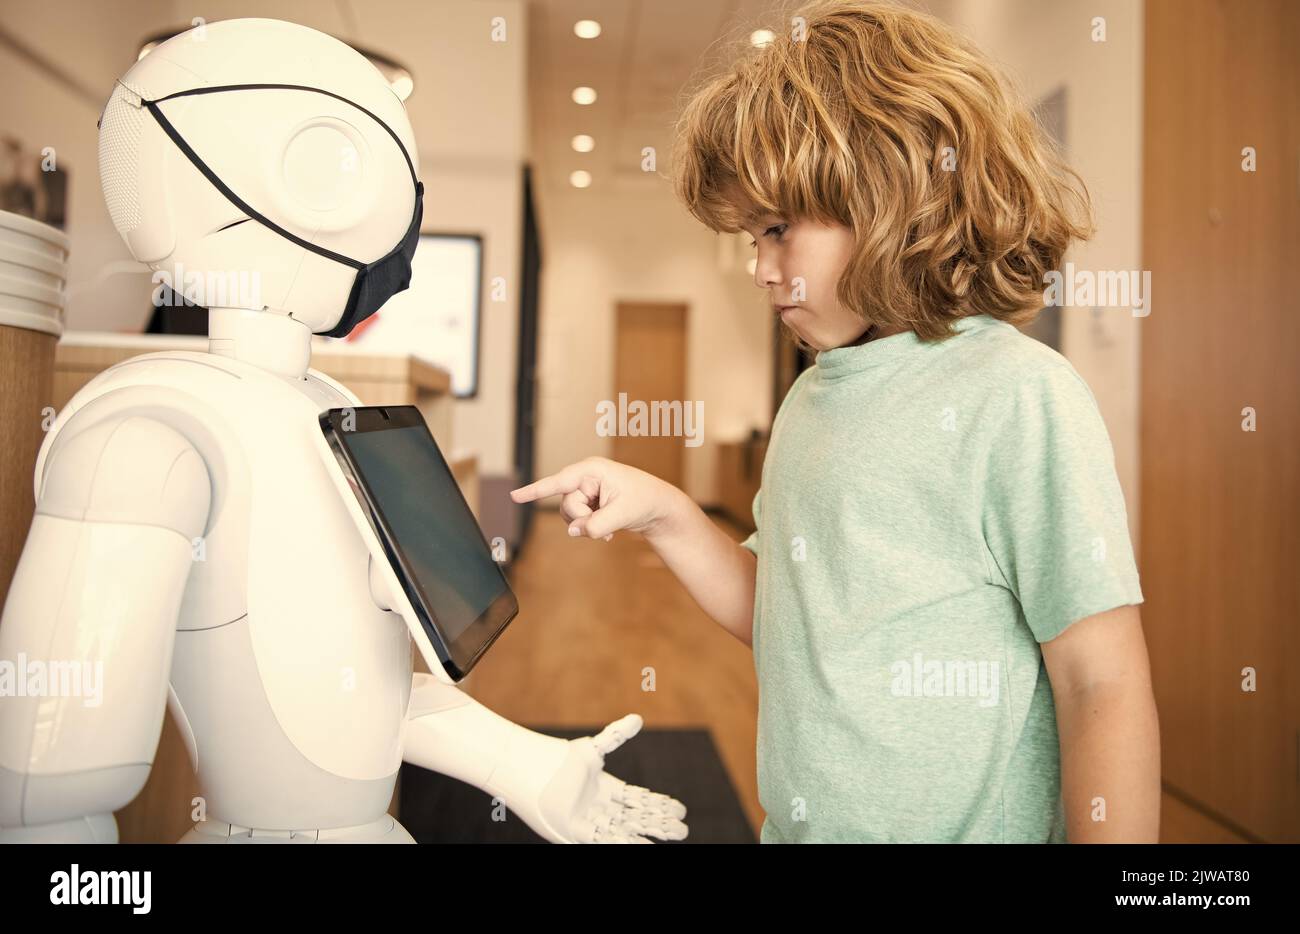 kid interagir avec le robot intelligence artificielle, communication. Banque D'Images